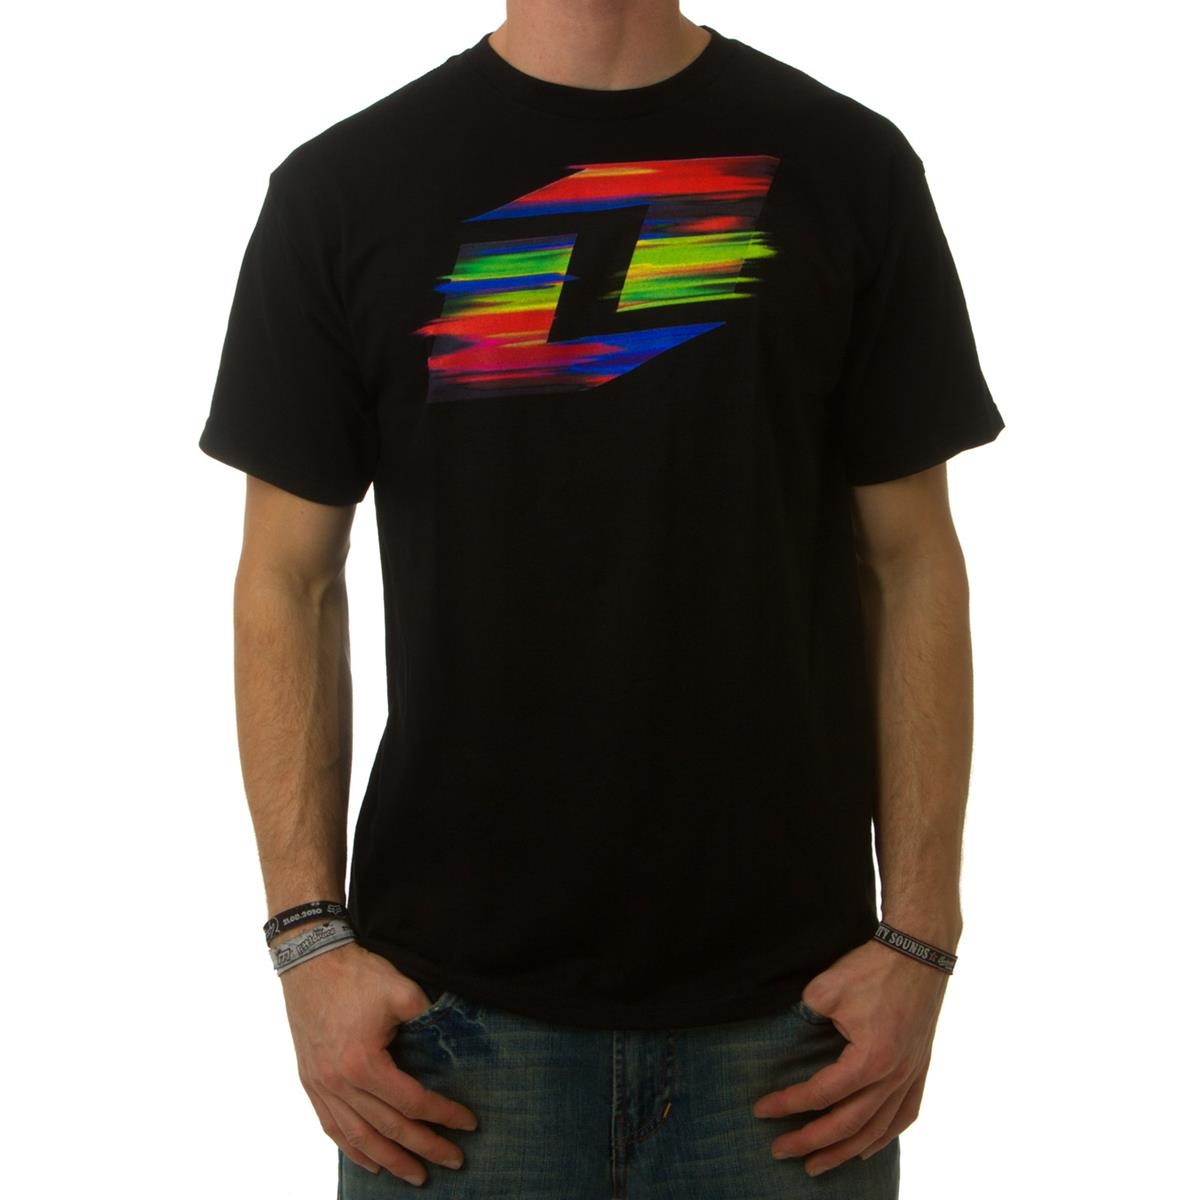 Freizeit/Streetwear Bekleidung-T-Shirts/Polos - One Industries T-Shirt Speedy Black